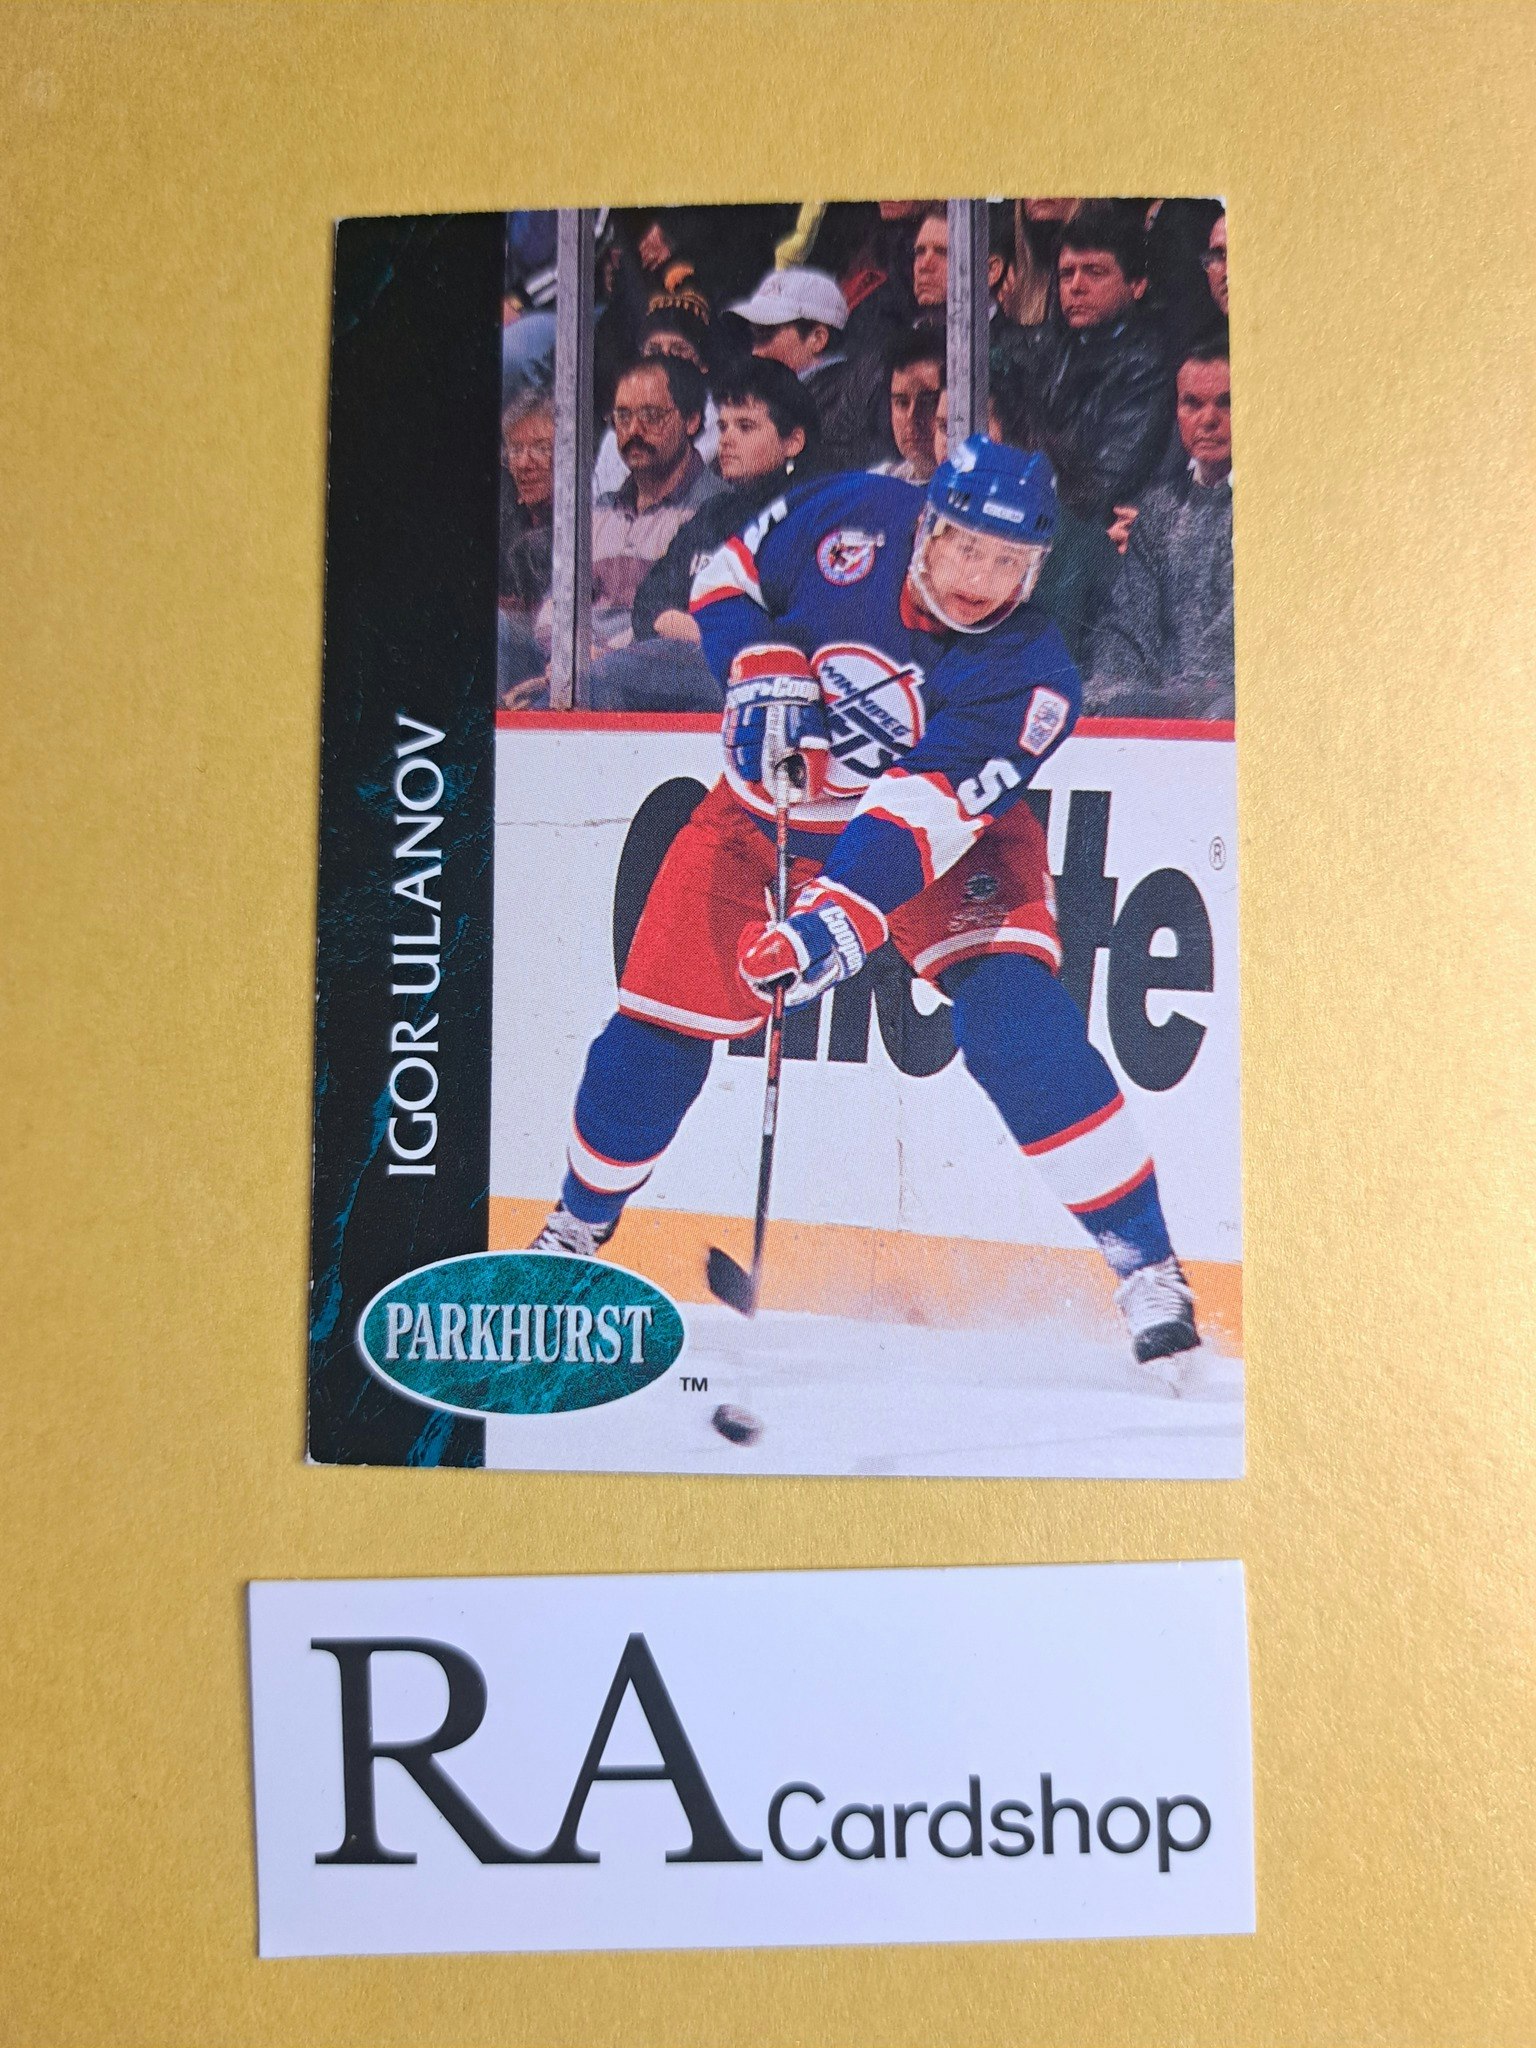 Igor Ulanov 92-93 Parkhurst #440 NHL Hockey